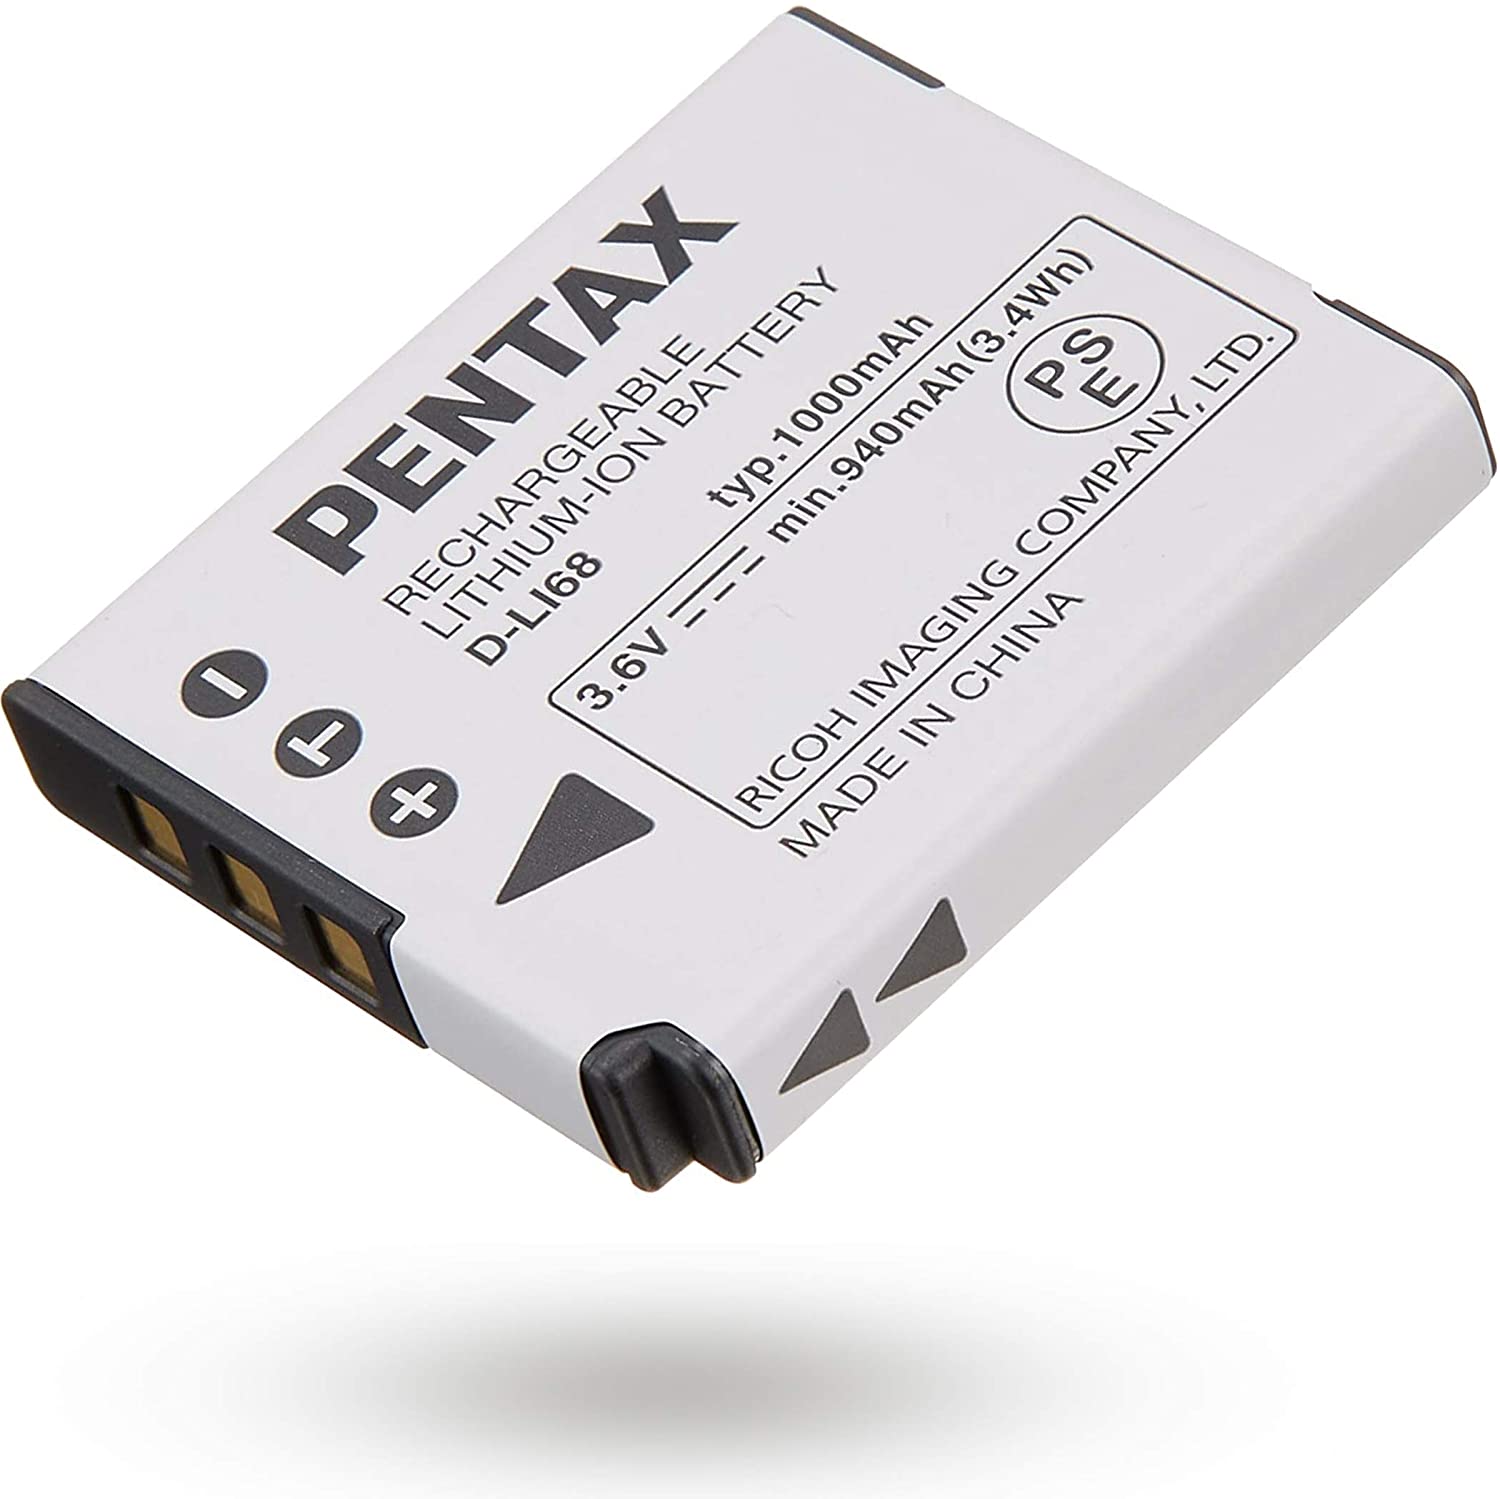 最終決算 注目 PENTAX D-LI68 充電式リチウムイオンバッテリー リチャージャブルバッテリー リコー メーカー純正品 対応機種 Q-S1 Q7 Q10 Q Optio S10用 elma-ultrasonic.nl elma-ultrasonic.nl